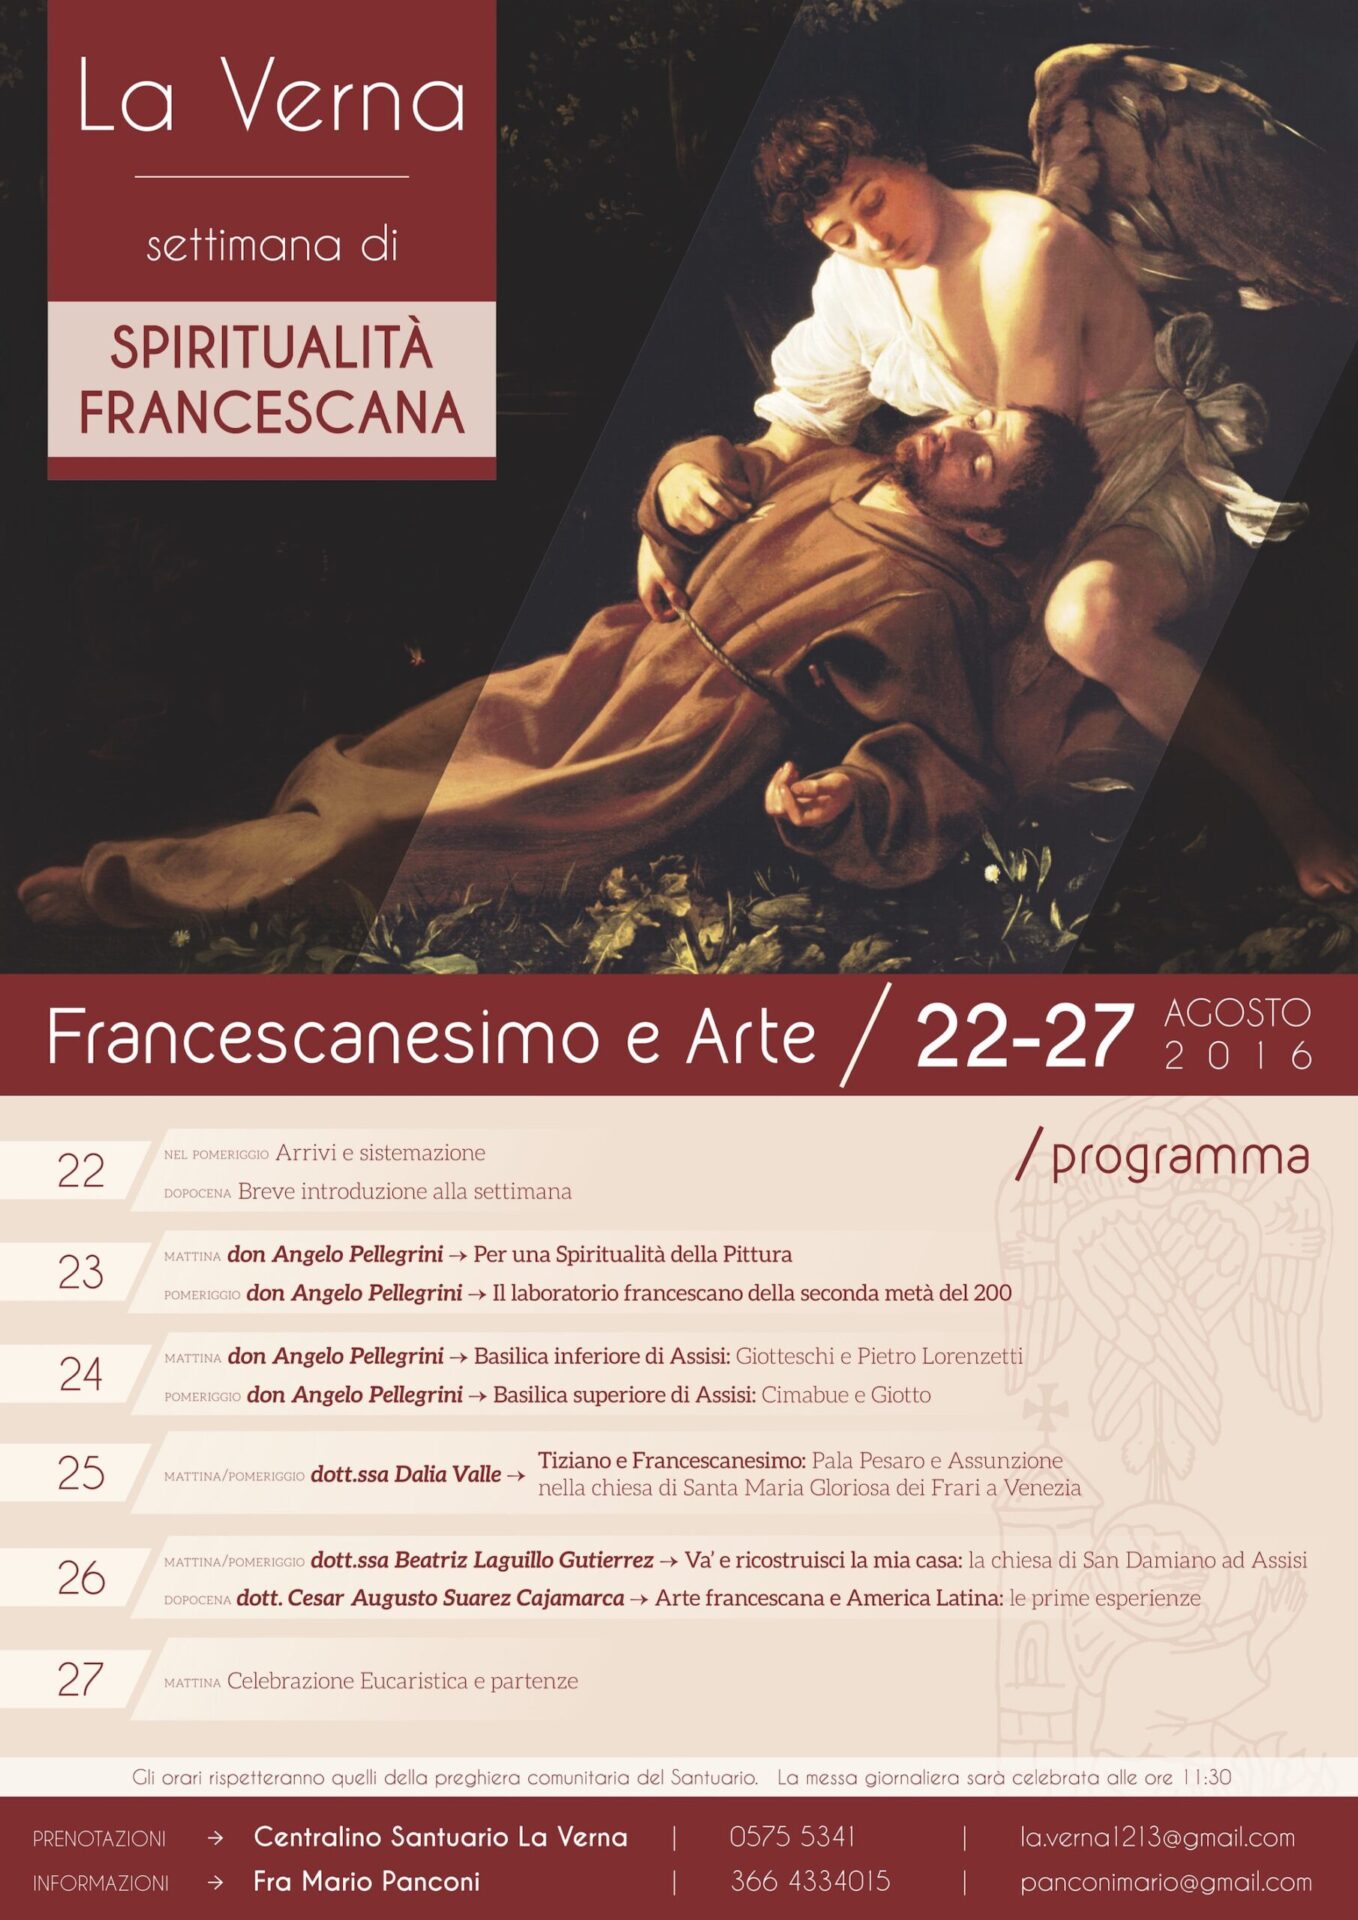 Francescanesimo e Arte - Settimana di Spiritualità Francescana